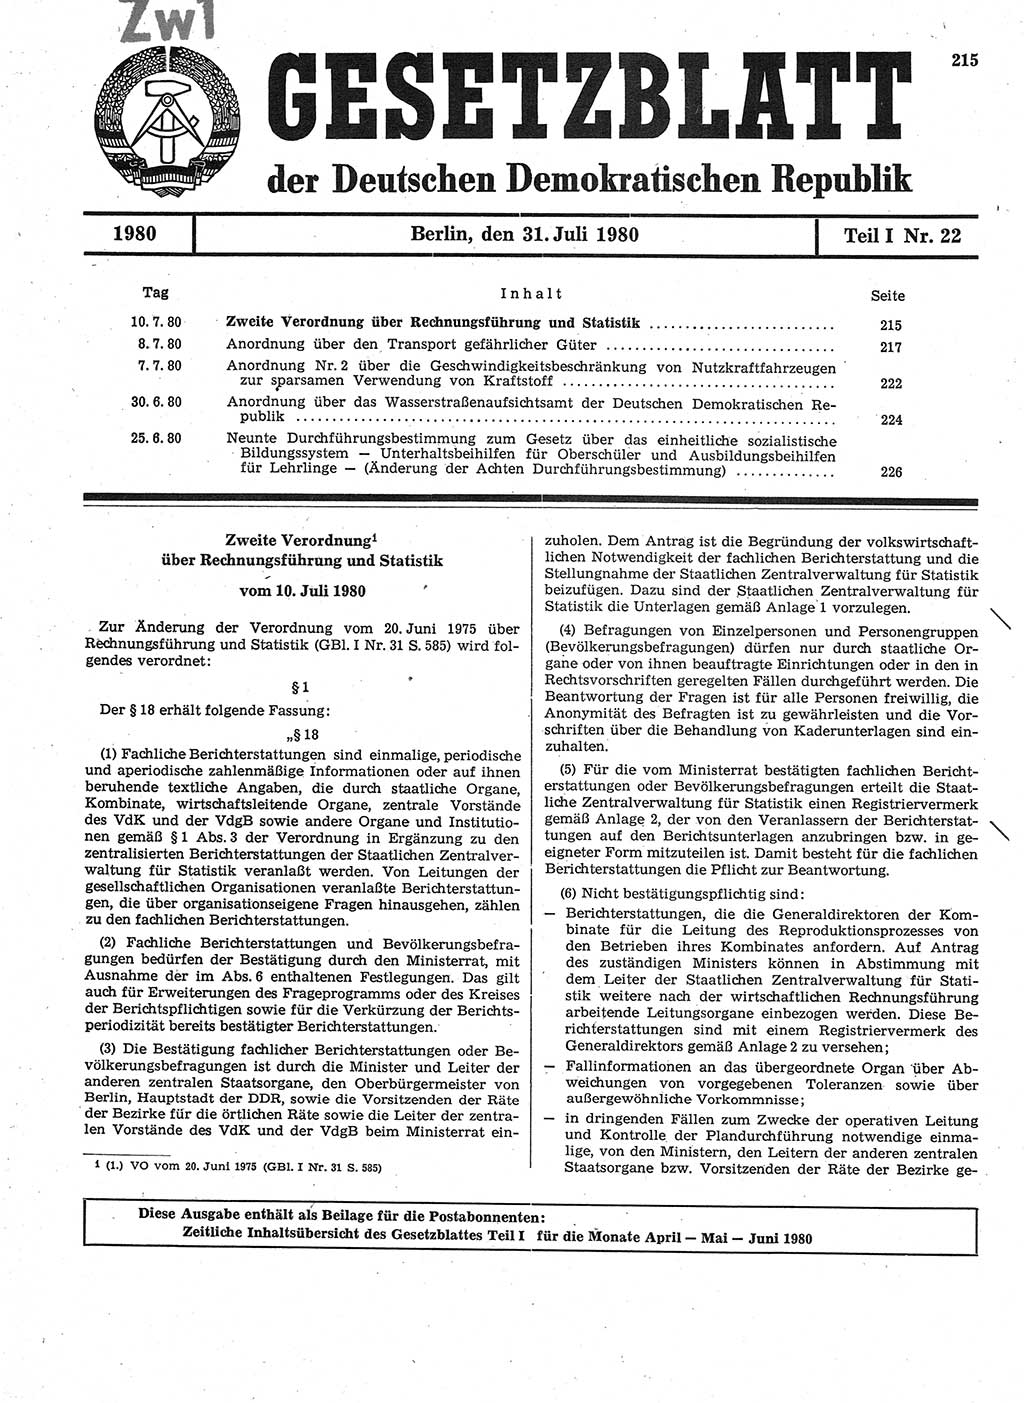 Gesetzblatt (GBl.) der Deutschen Demokratischen Republik (DDR) Teil Ⅰ 1980, Seite 215 (GBl. DDR Ⅰ 1980, S. 215)